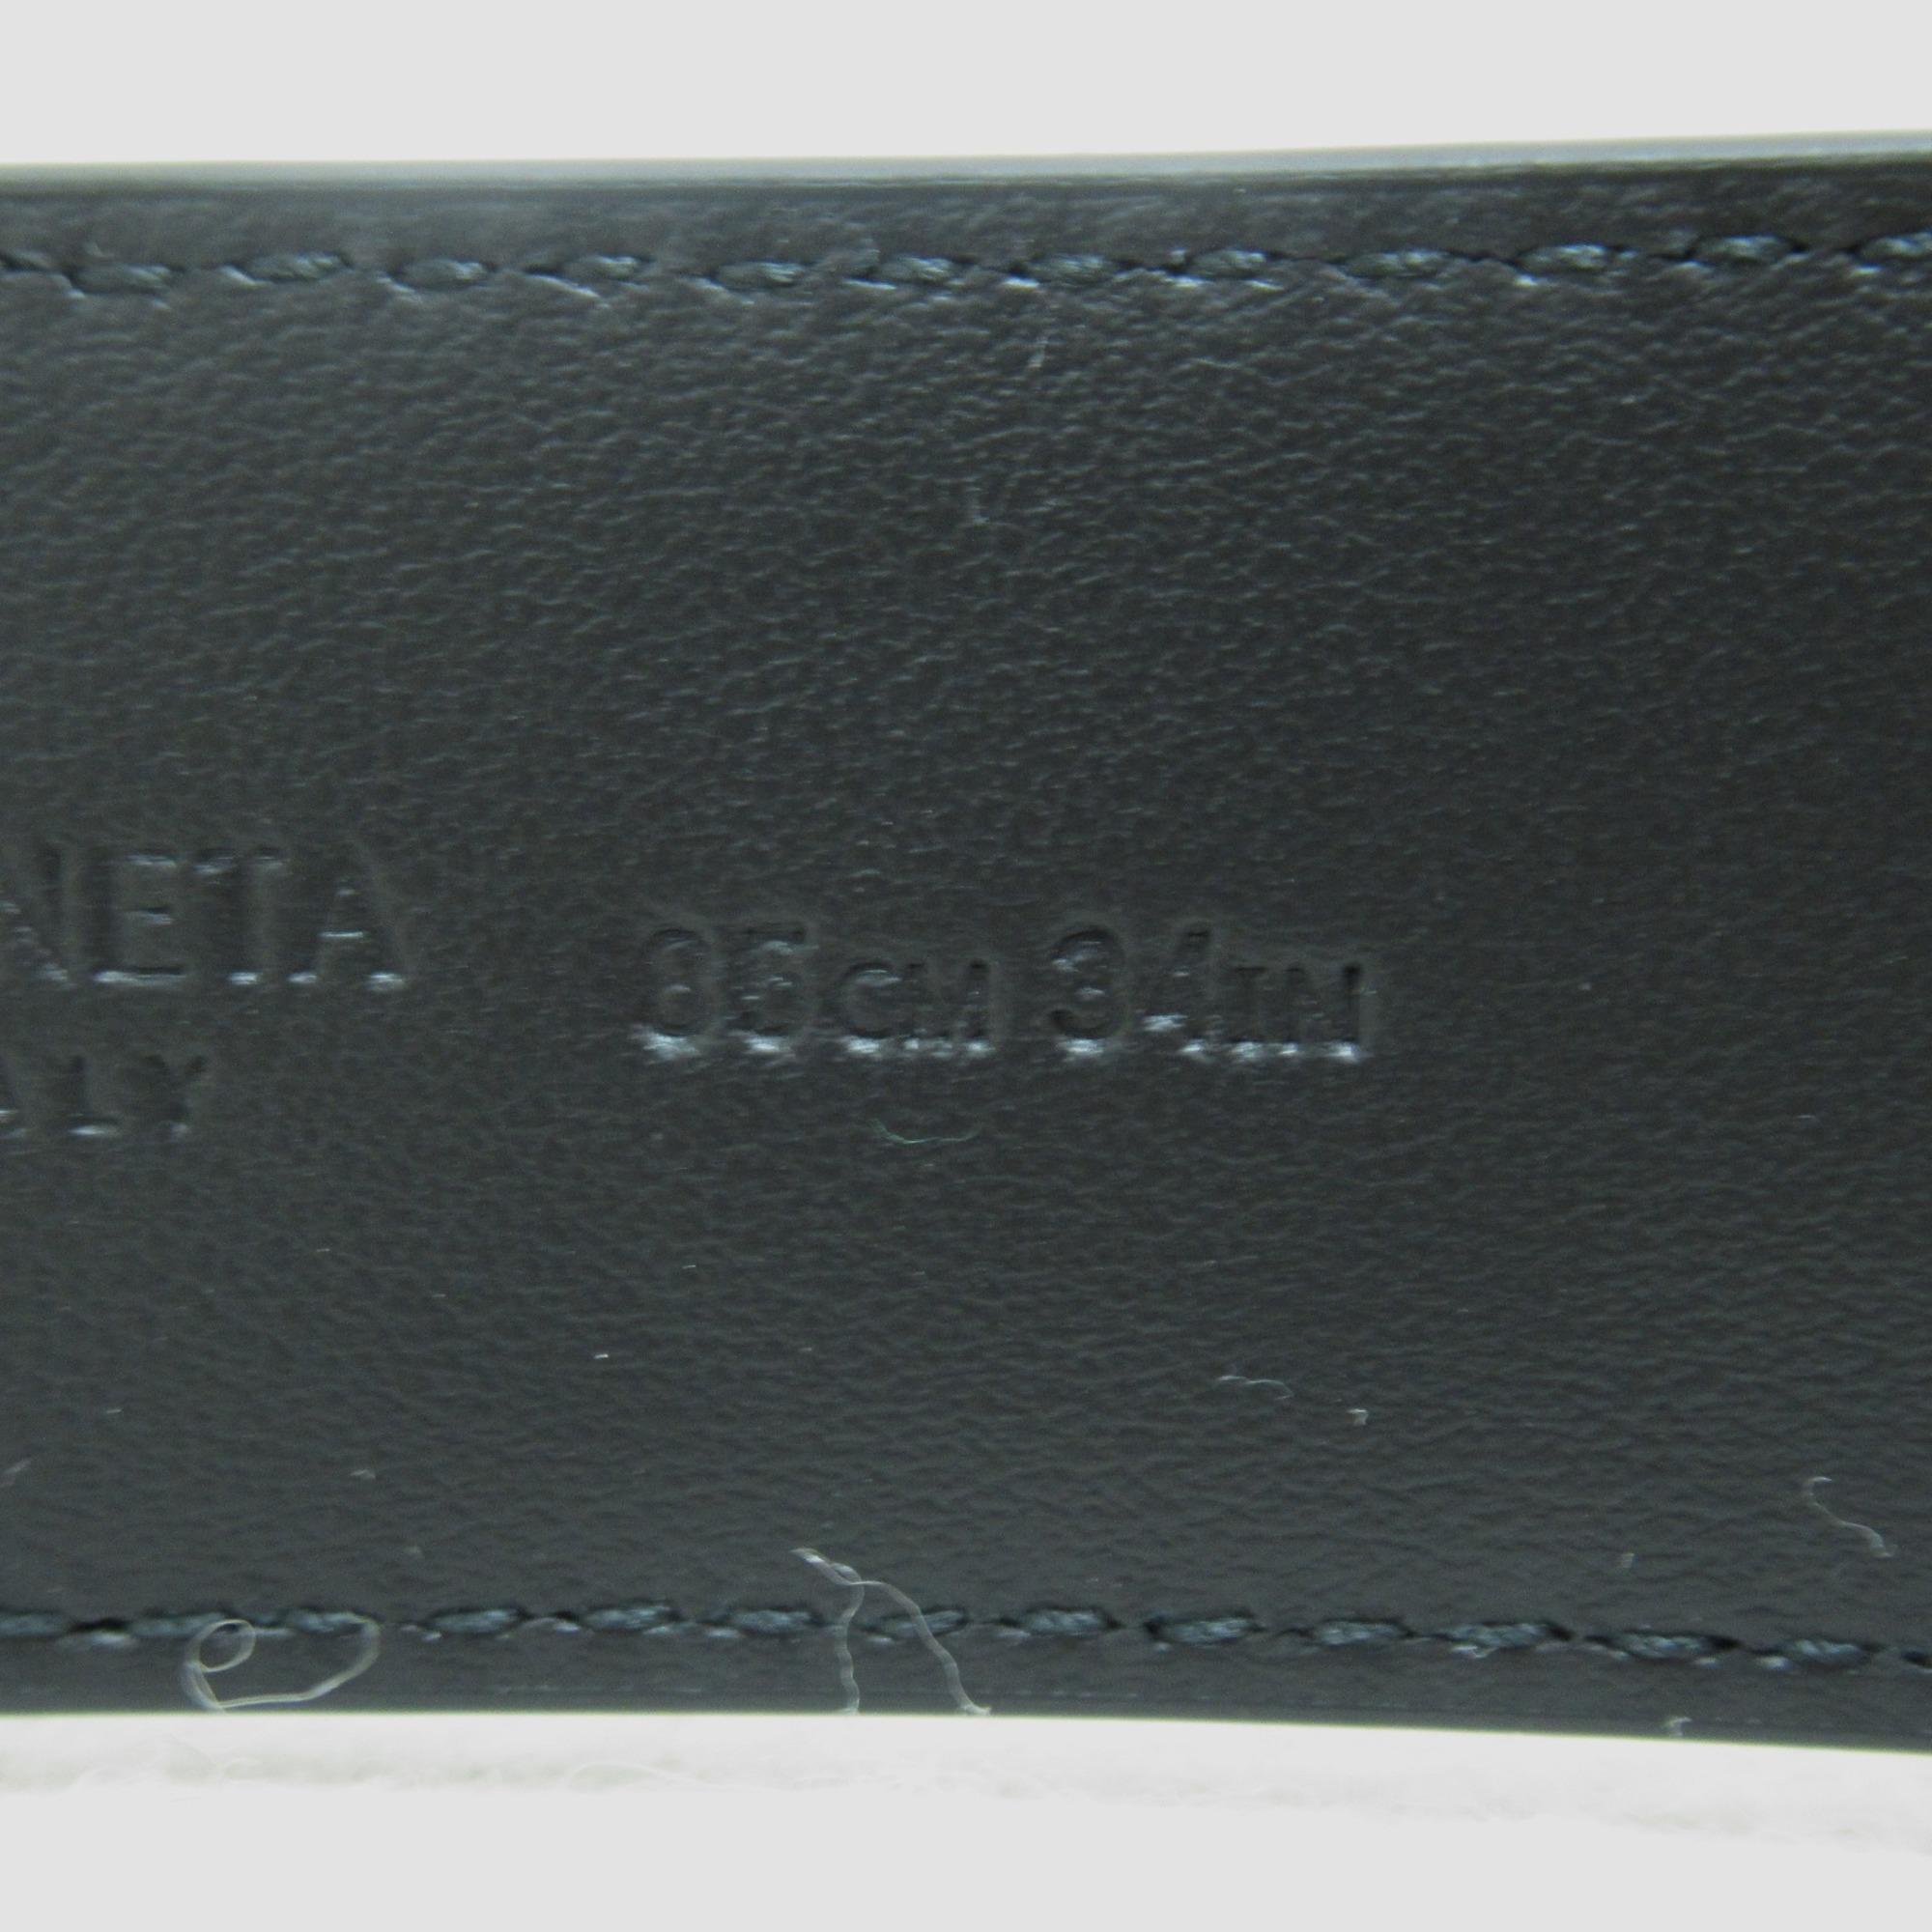 BOTTEGA VENETA Intrecciato belt Black Calfskin (cowhide) 734910V2Q81101985